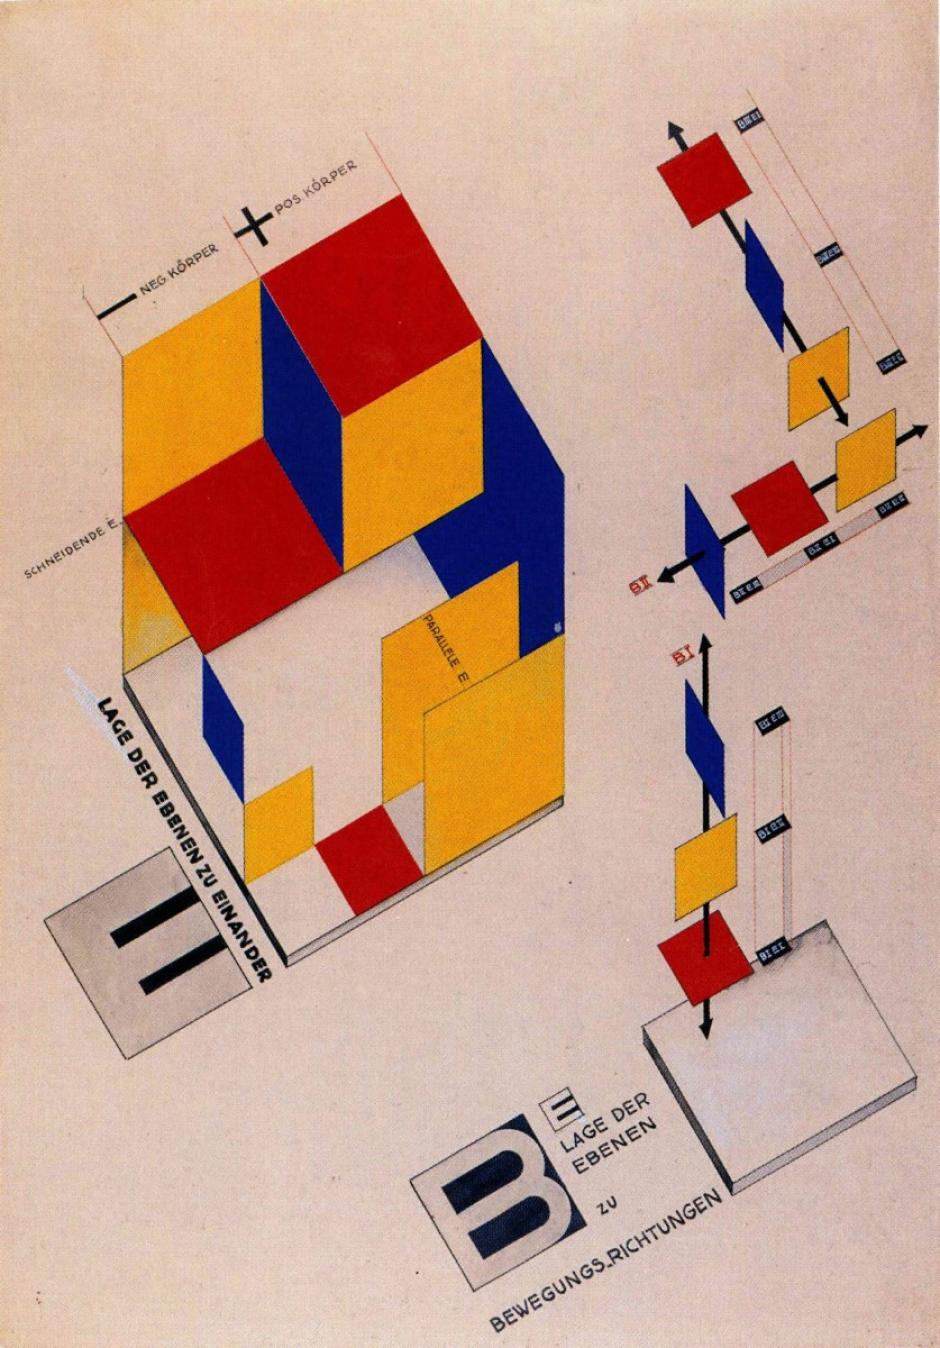 Escenografía mecánica de Joost Schmidt, 1925